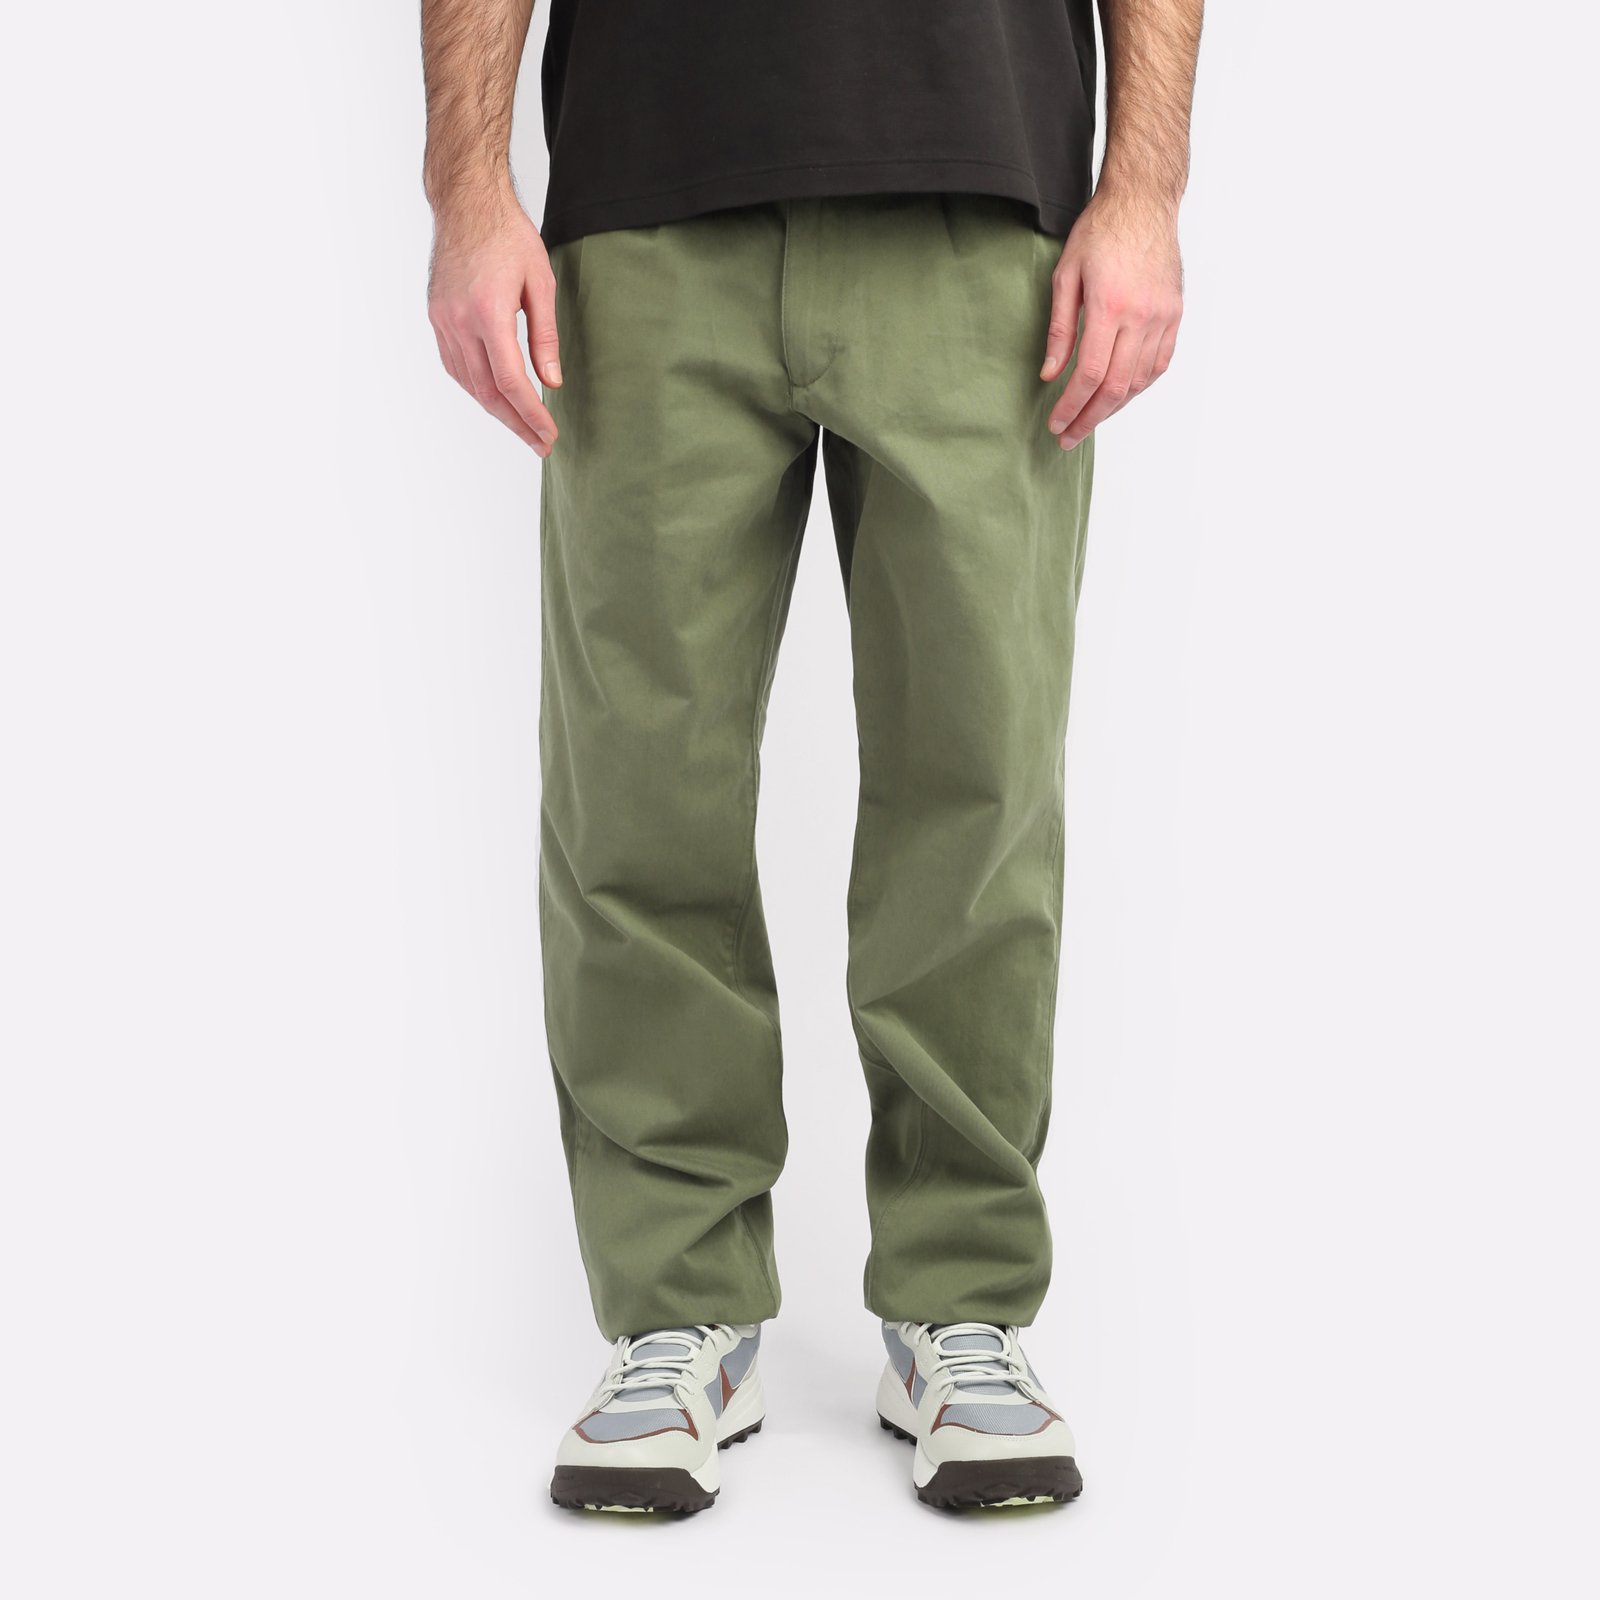 мужские брюки Alpha Industries Classic Trousers  (MBC53500CO-green)  - цена, описание, фото 1